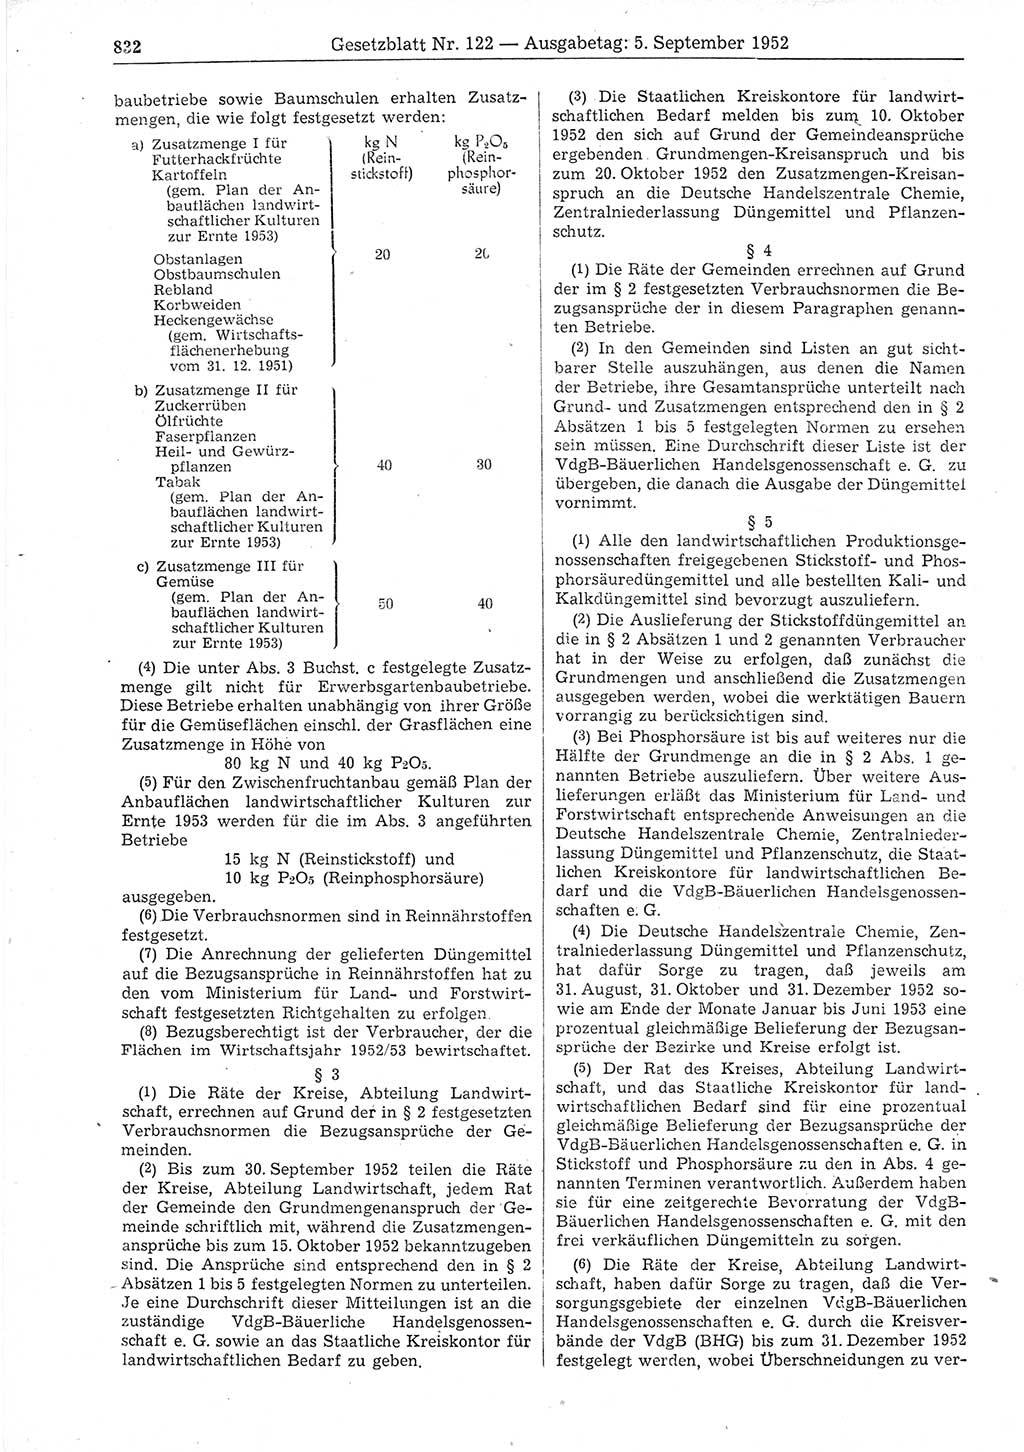 Gesetzblatt (GBl.) der Deutschen Demokratischen Republik (DDR) 1952, Seite 832 (GBl. DDR 1952, S. 832)